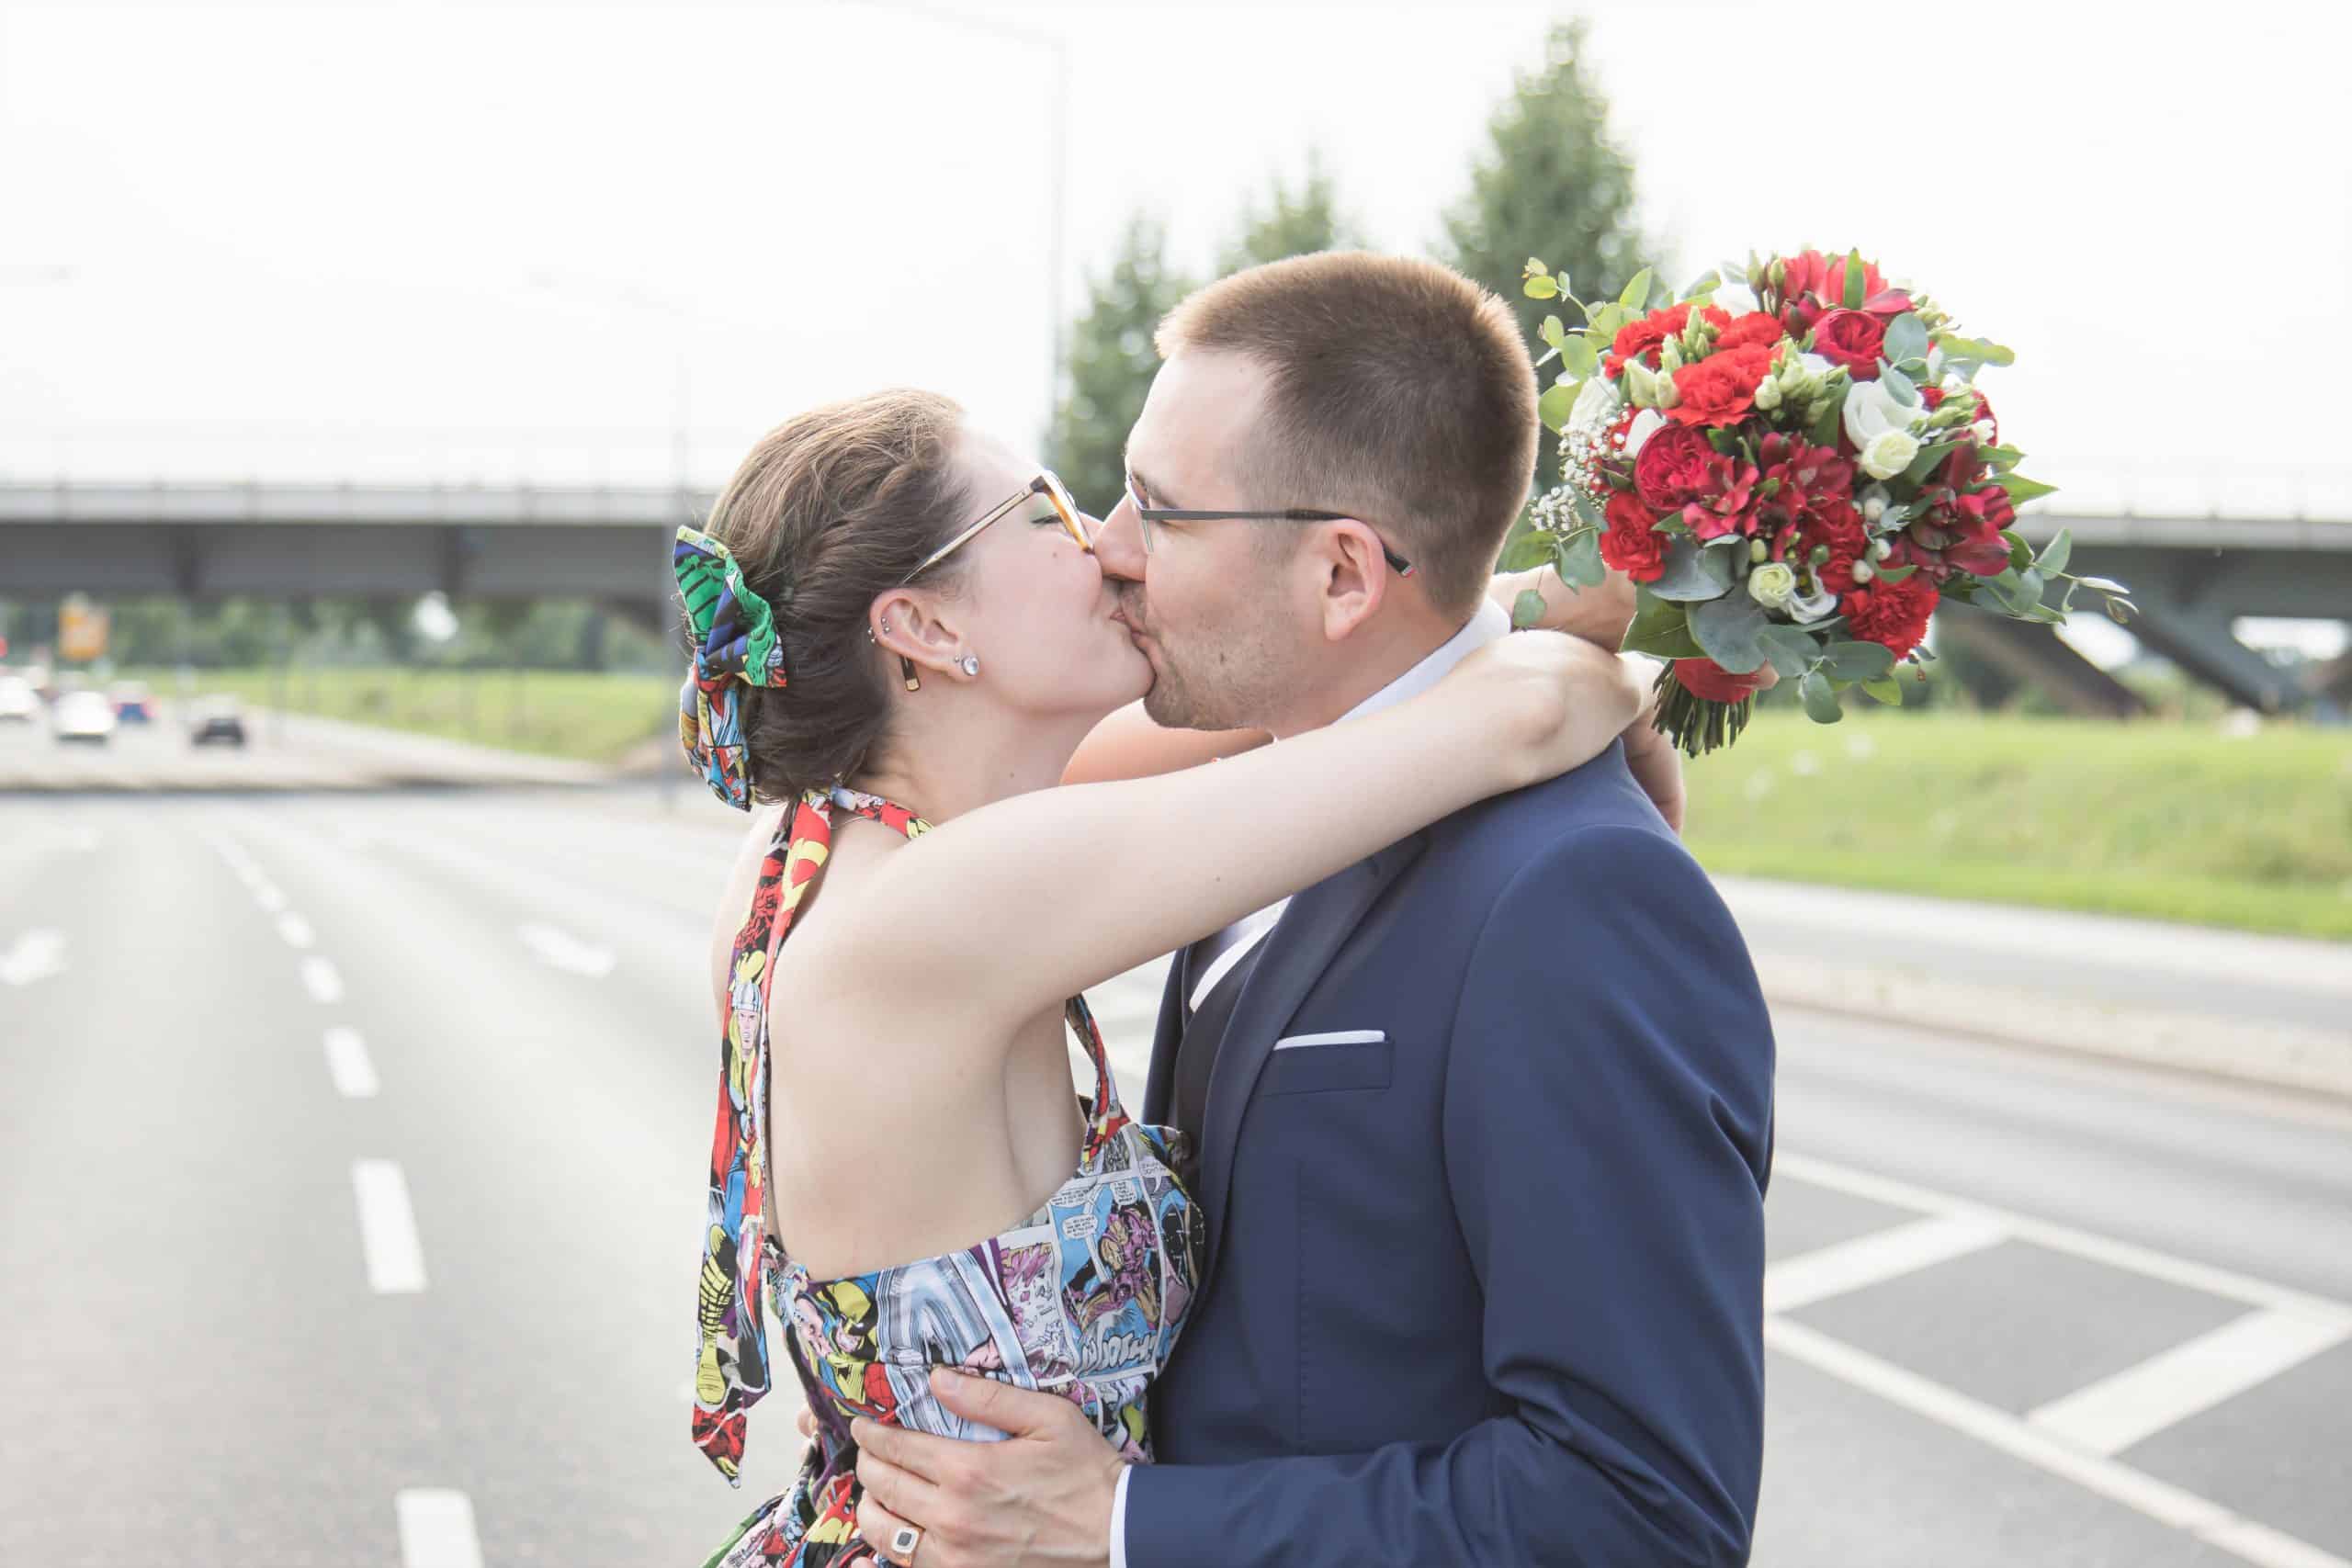 Jan Windisch, Fotograf und Hochzeitsfotograf aus Dresden, Prina, Görlitz, Großenhain und Leipzig, hat hier ein Brautpaar fotografiert. Das Paar steht nebeneinander auf einer Straße und küssen sich. Beide Personen sind ab der Hüfte aufwärts zu sehen.